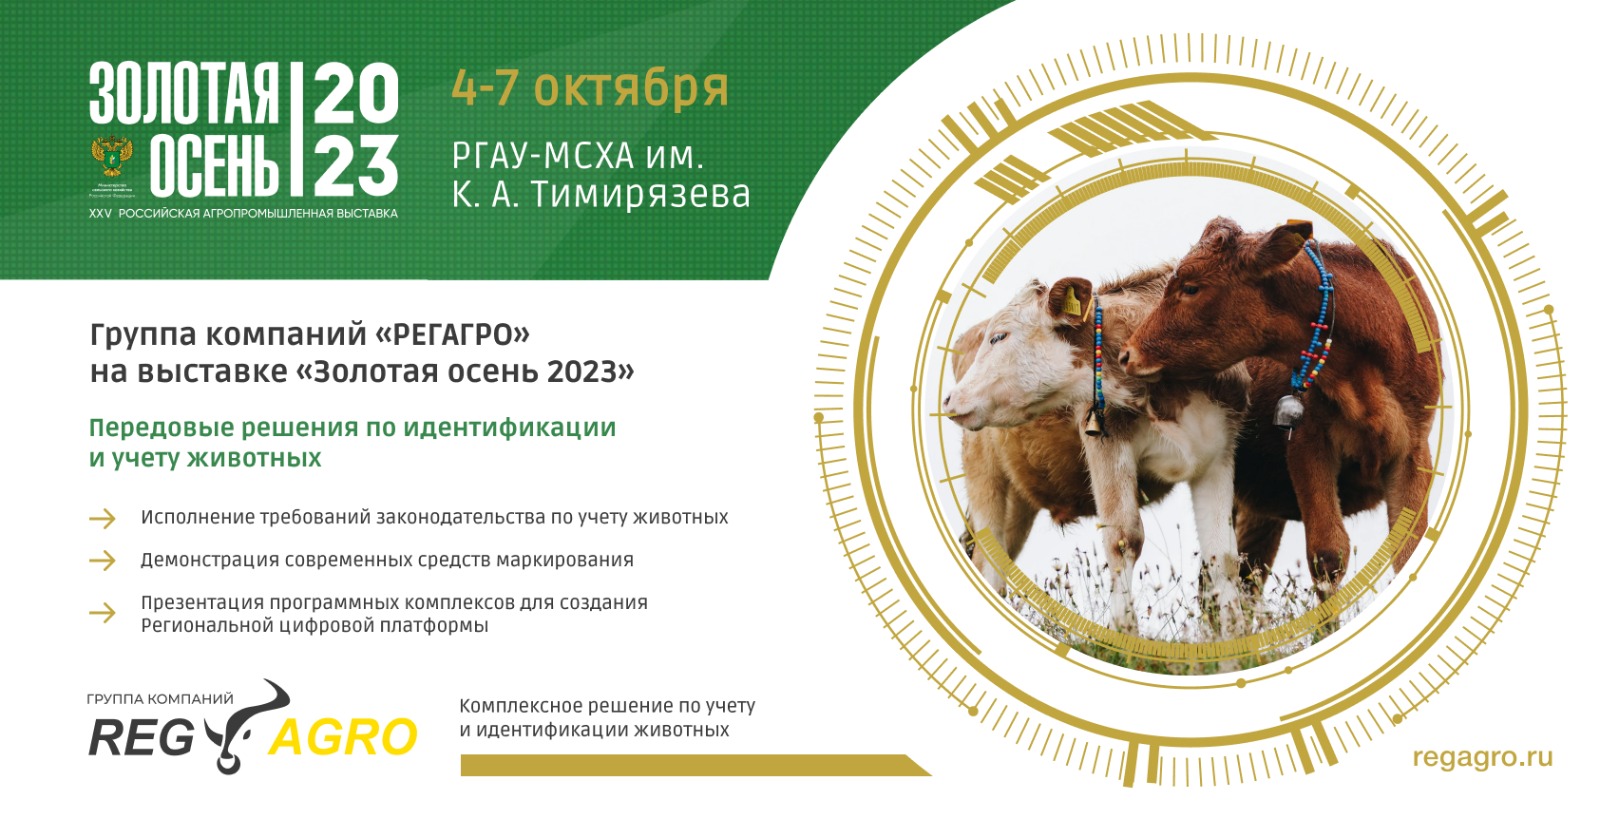 XXV Российская агропромышленная выставка «Золотая осень 2023» — новые технологии в отрасли